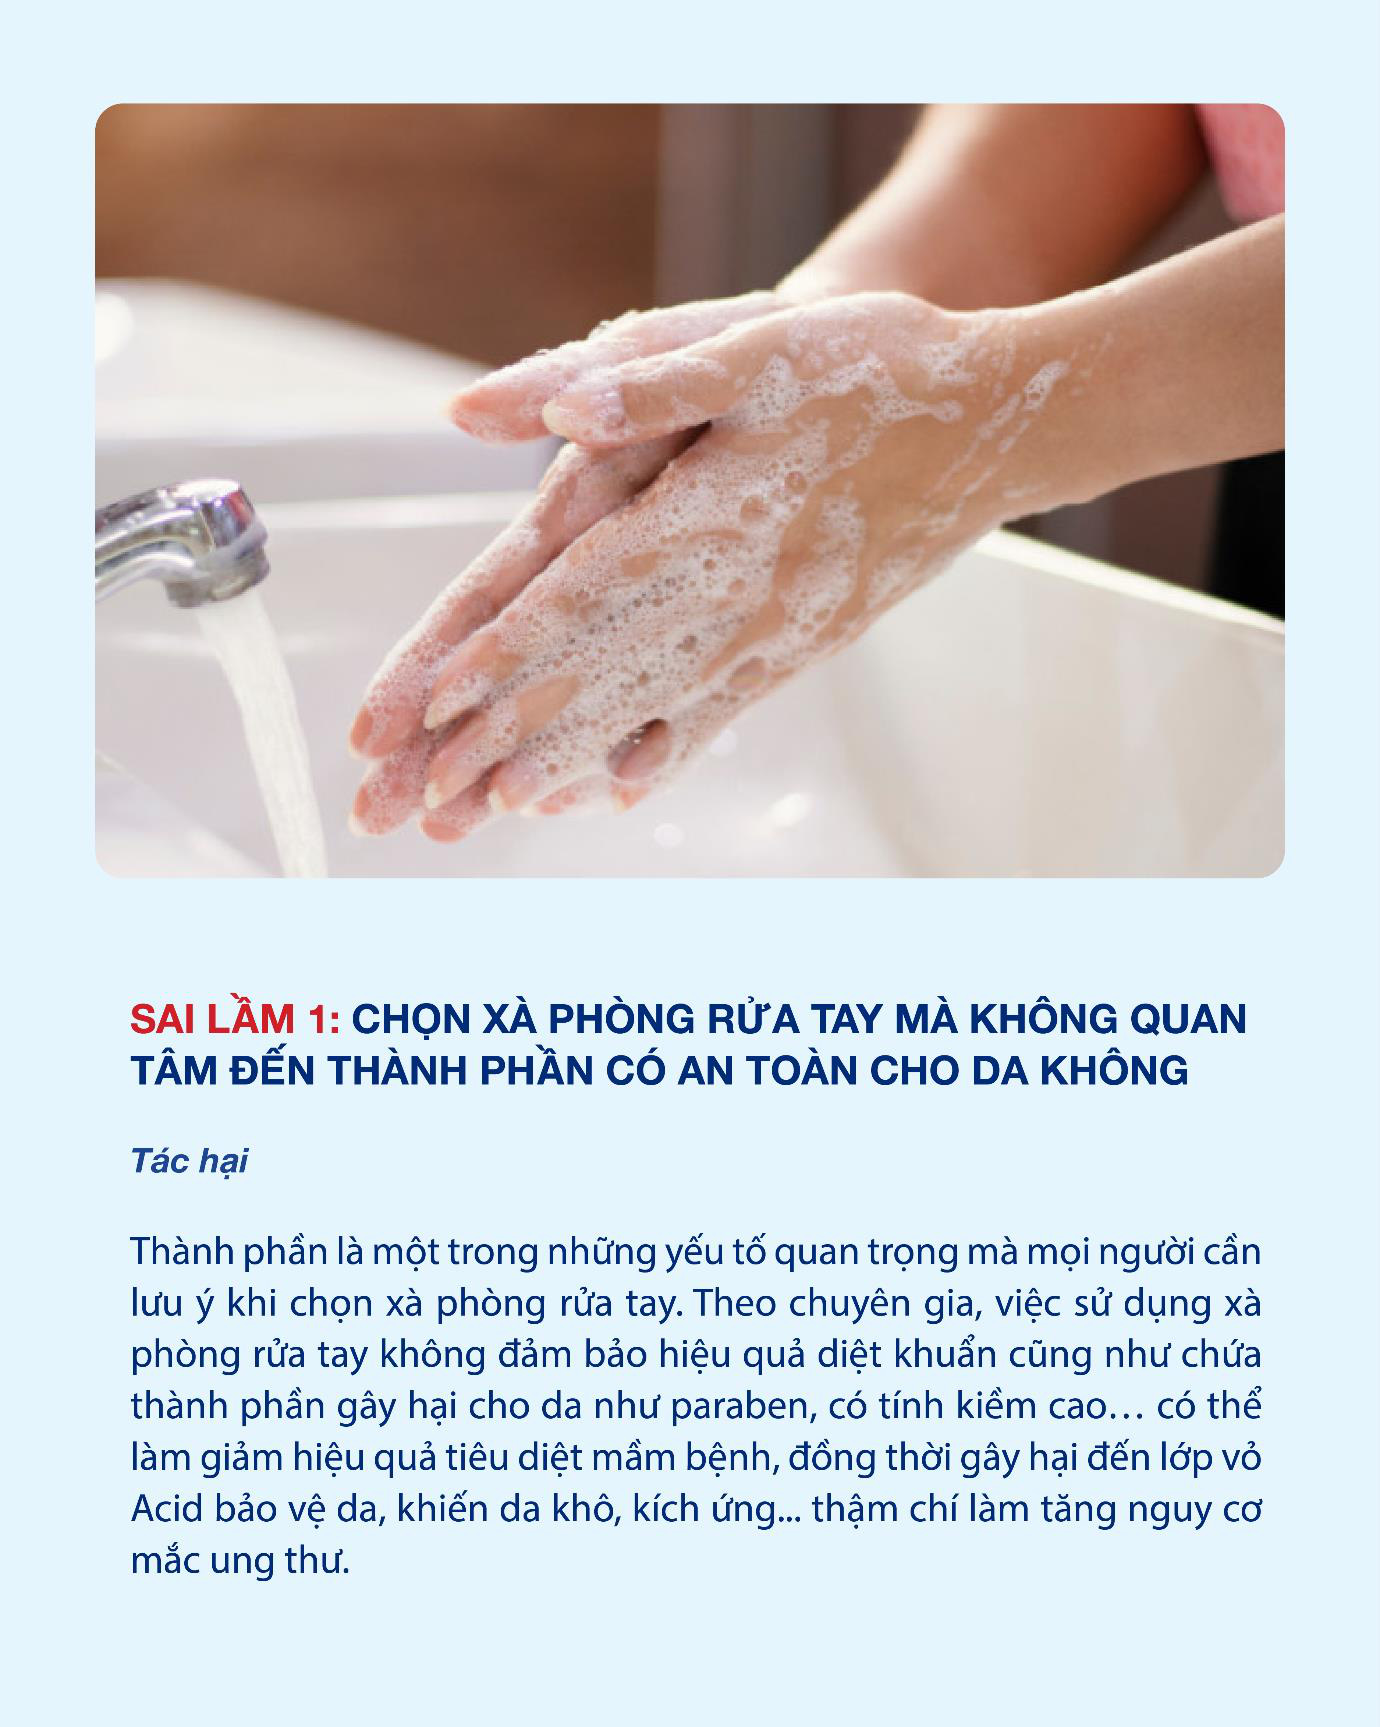 Hiệu quả phòng bệnh của rửa tay bằng xà phòng trở nên kém hiệu quả chỉ vì 3 sai lầm sau - Ảnh 1.